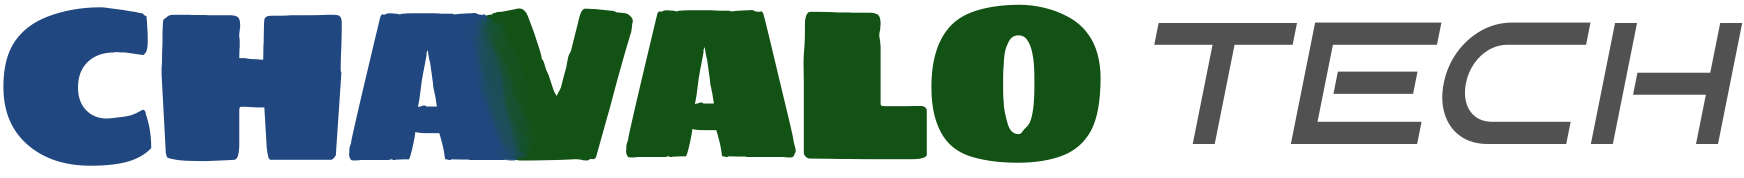 Chavalo Tech logo